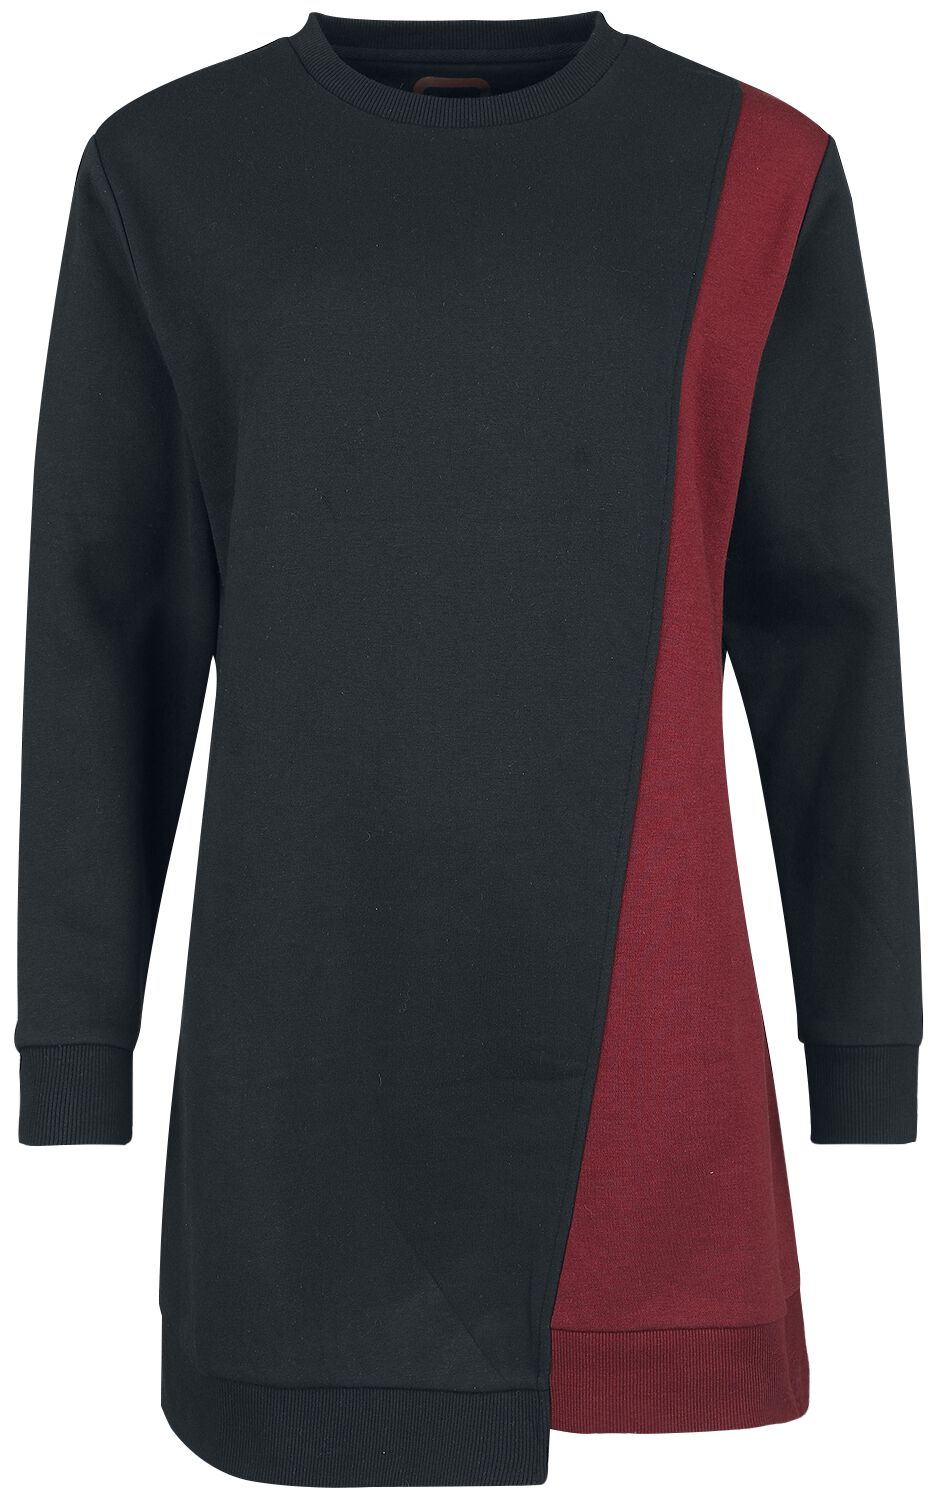 RED by EMP Sweatshirt Dress with asymmetrical Cut Kurzes Kleid schwarz dunkelrot in XXL von RED by EMP